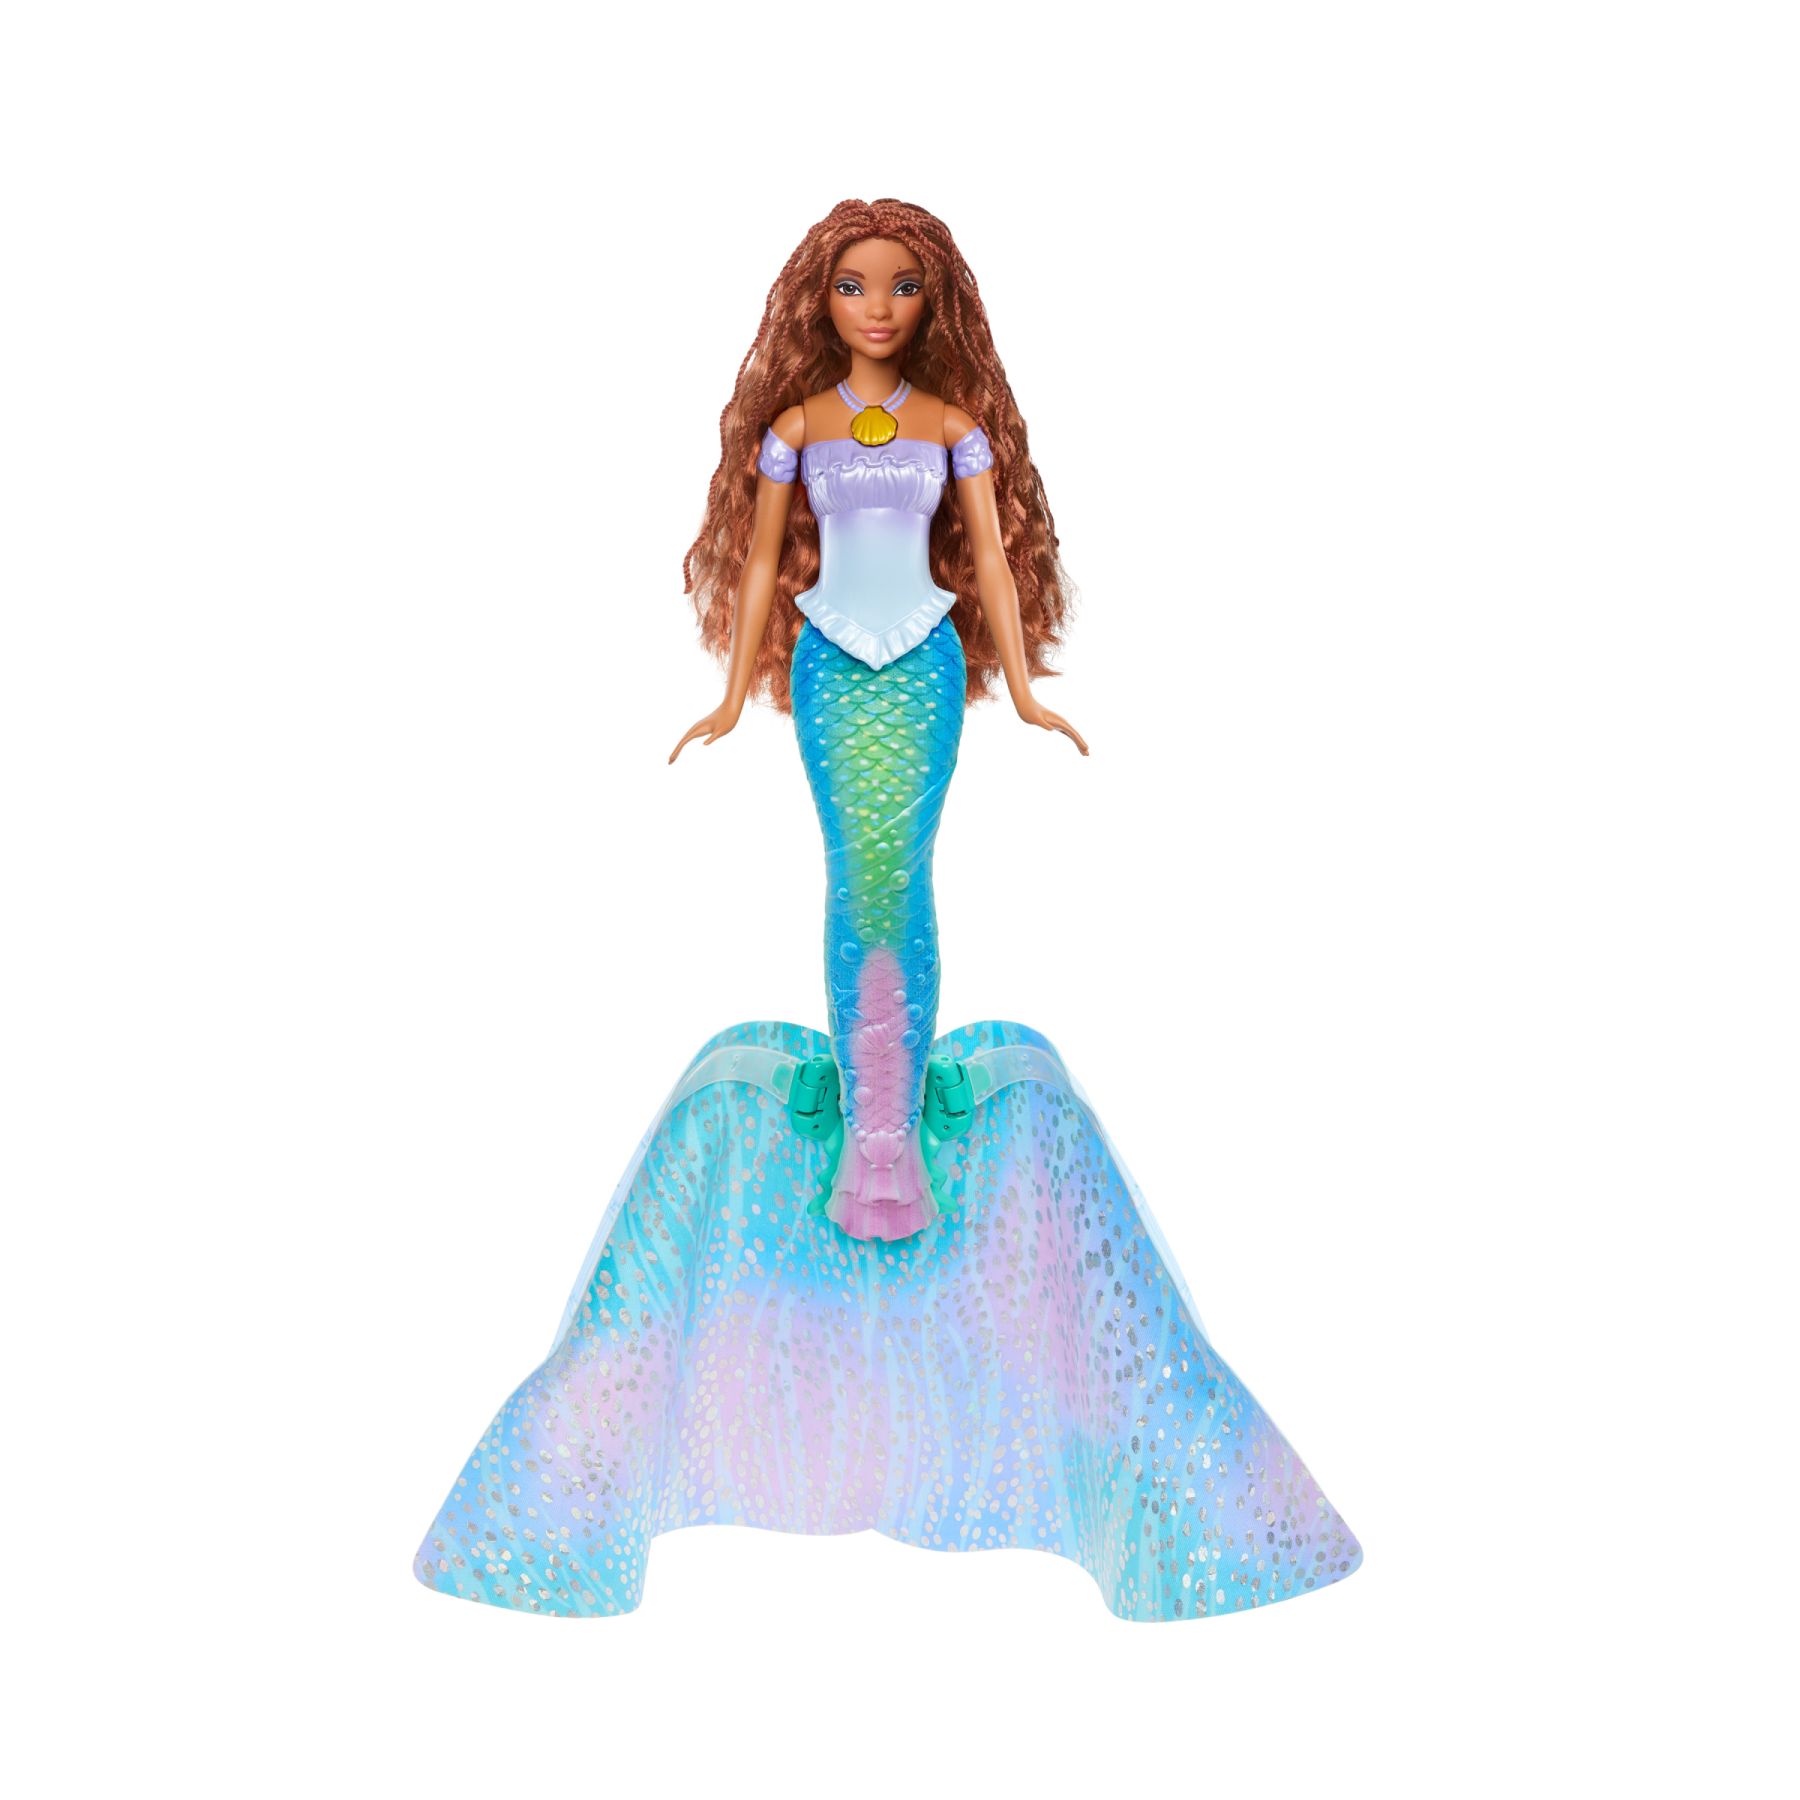 Disney la sirenetta - ariel bambola trasformabile, cambia da umana a sirena, premi la collana e l'abito blu diventa una coda da sirena multicolore, giocattolo per bambini, 3+ anni, hlx13 - DISNEY PRINCESS